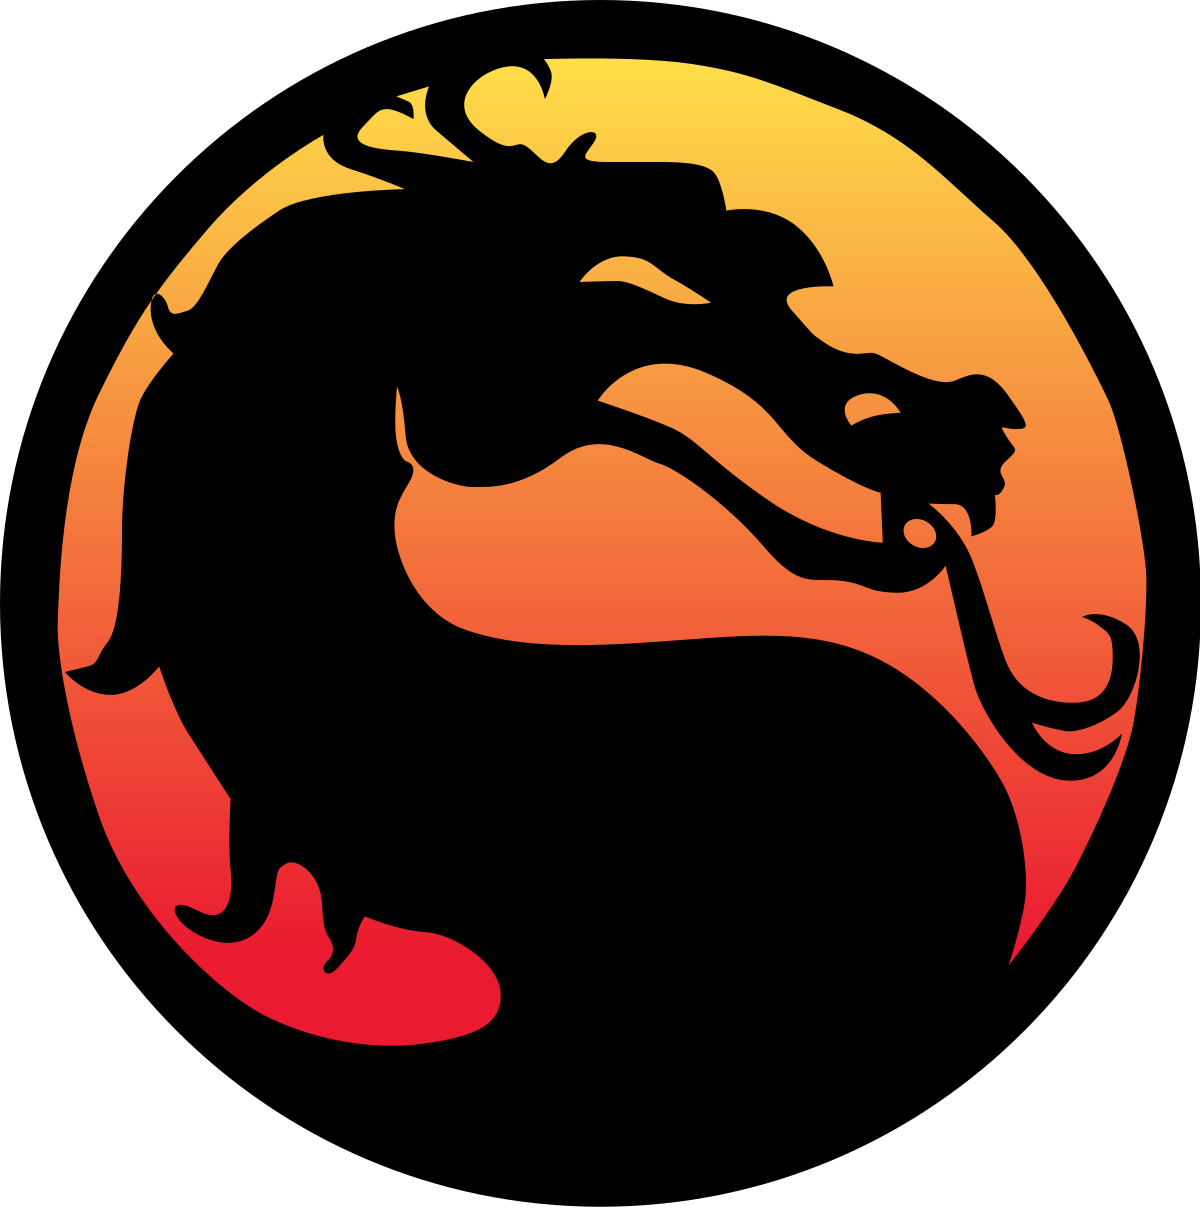 Mortal Kombat logo PNG imagen de alta calidad